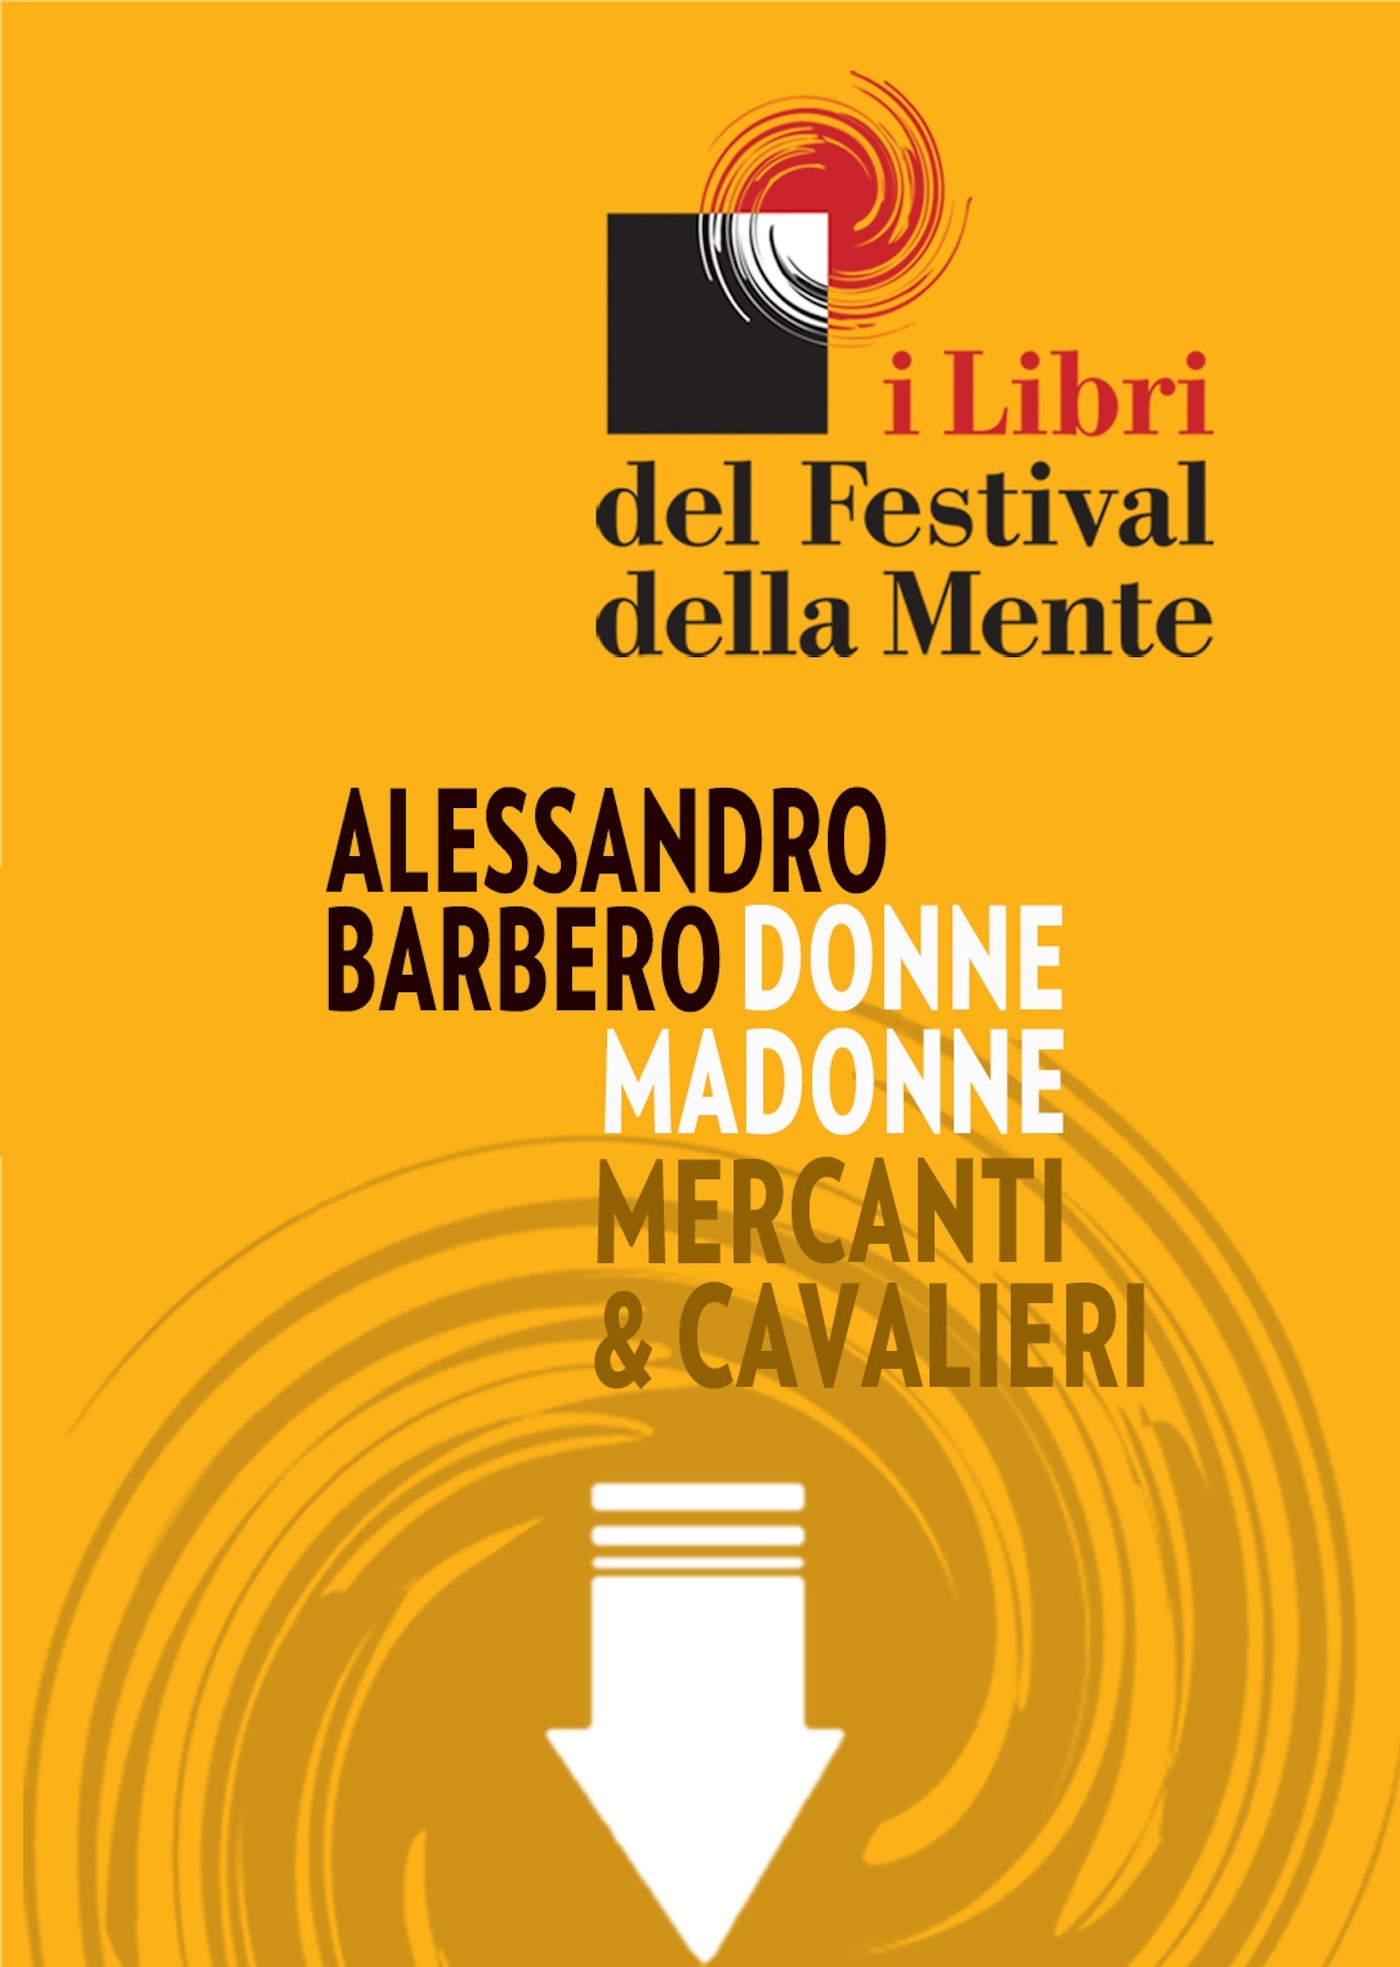 Alessandro Barbero - Festival della Mente